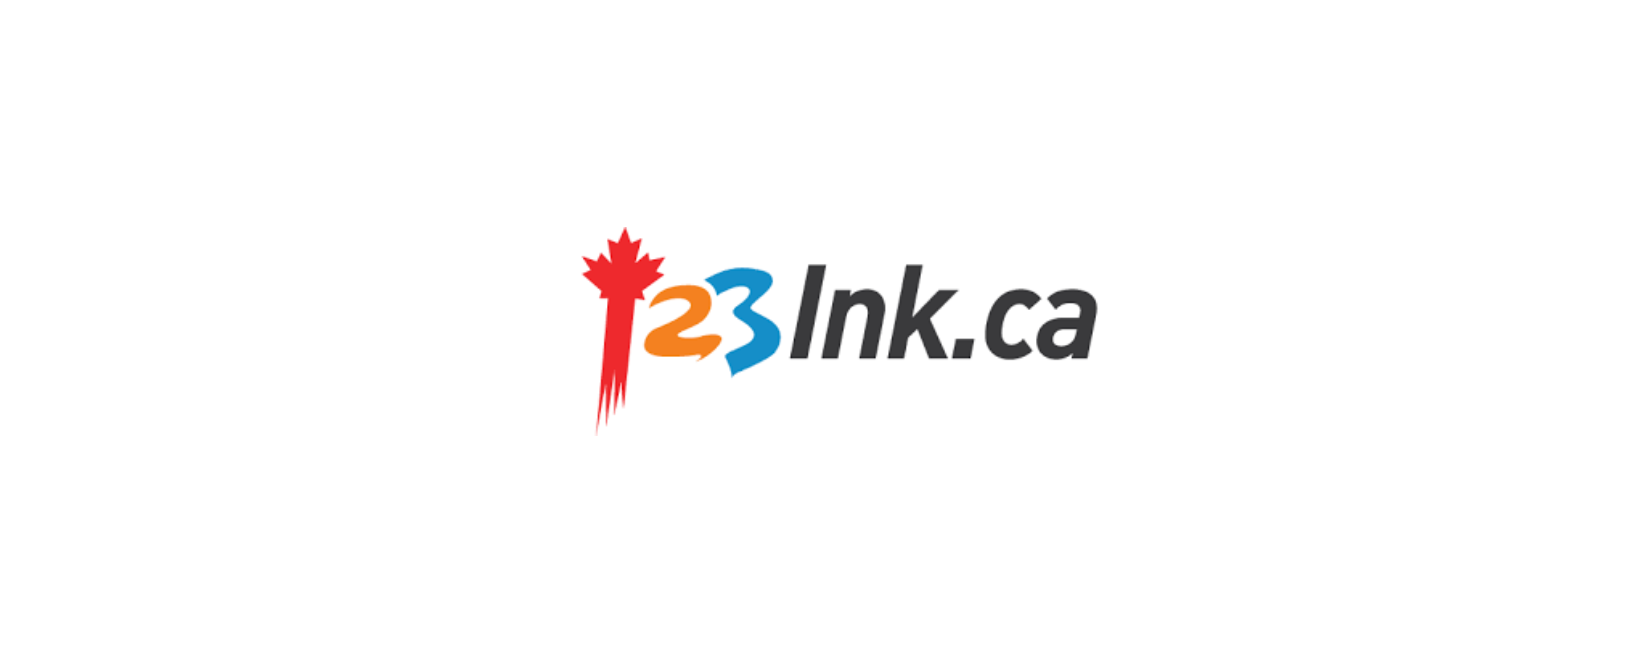 123Ink.ca Discount Code 2022